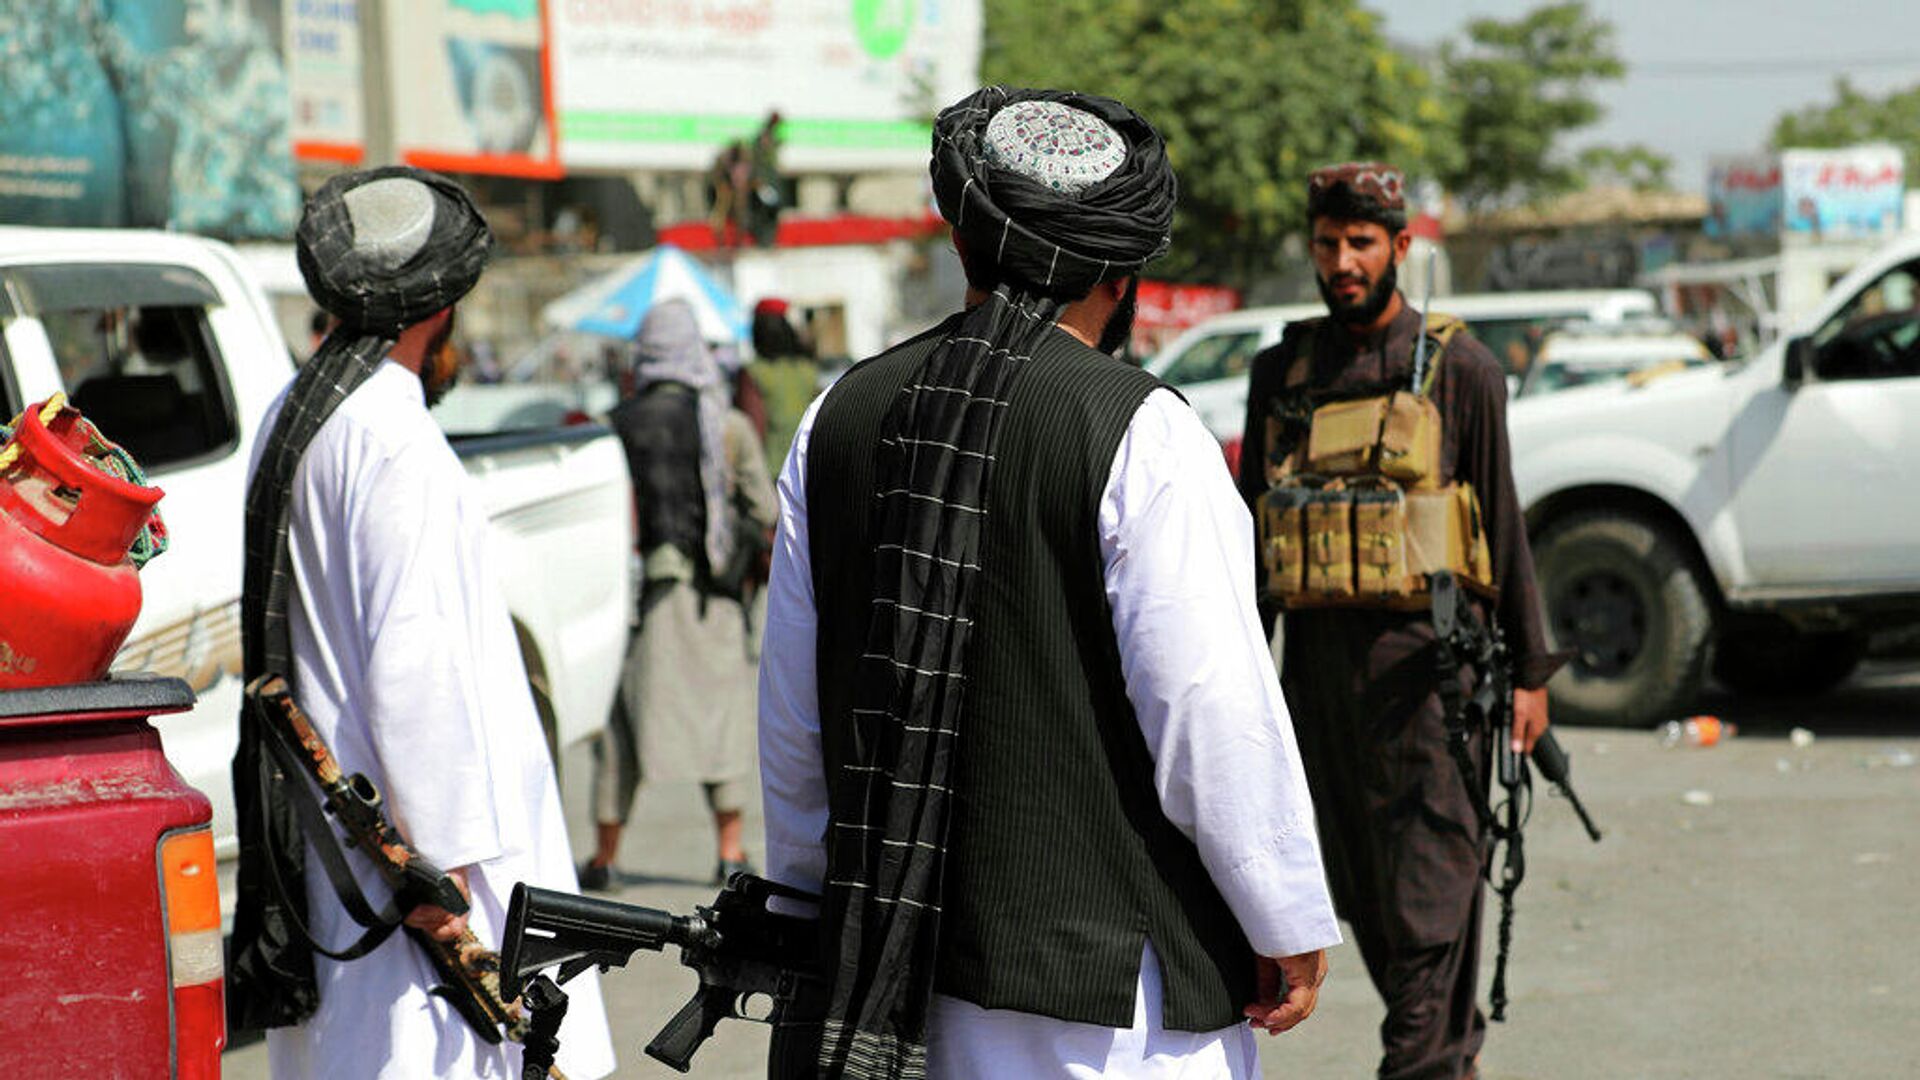 Боевики движения Талибан (признано в России запрещенной террористической организацией) перед международным аэропортом имени Хамида Карзая в Кабуле, Афганистан. 16 августа 2021 года - РИА Новости, 1920, 04.09.2021